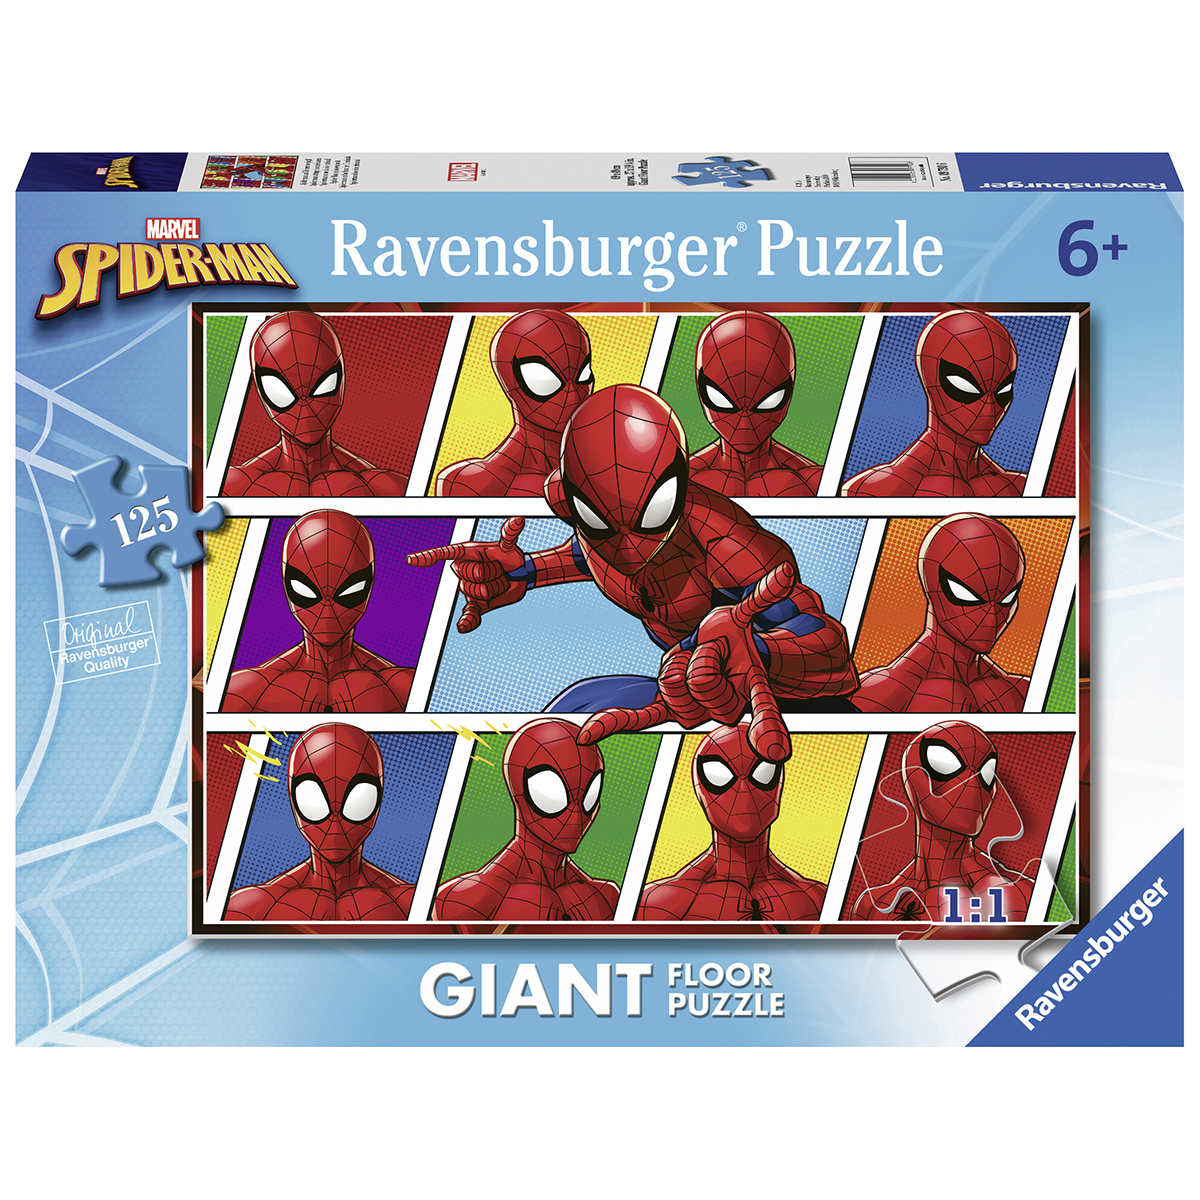 Ravensburger - puzzle 125 pezzi formato giant - per bambini a partire dai 6 anni - spiderman - RAVENSBURGER, Avengers, Spiderman